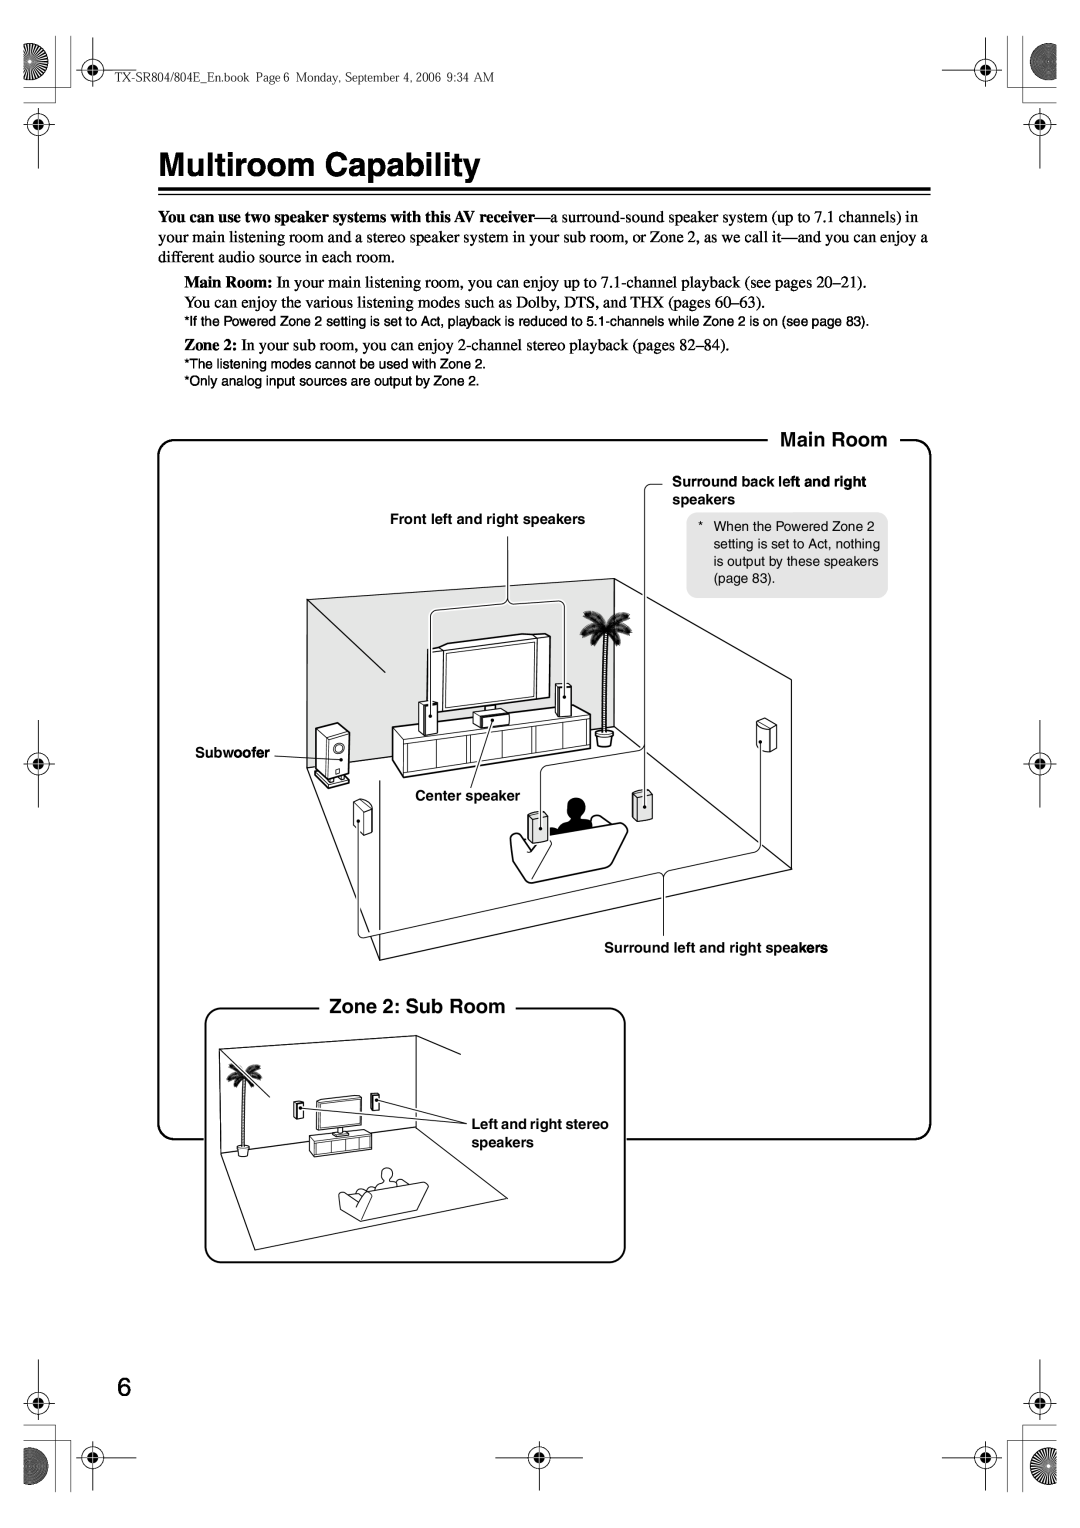 Onkyo TX-SR804E instruction manual Multiroom Capability, Main Room, Zone 2 Sub Room 